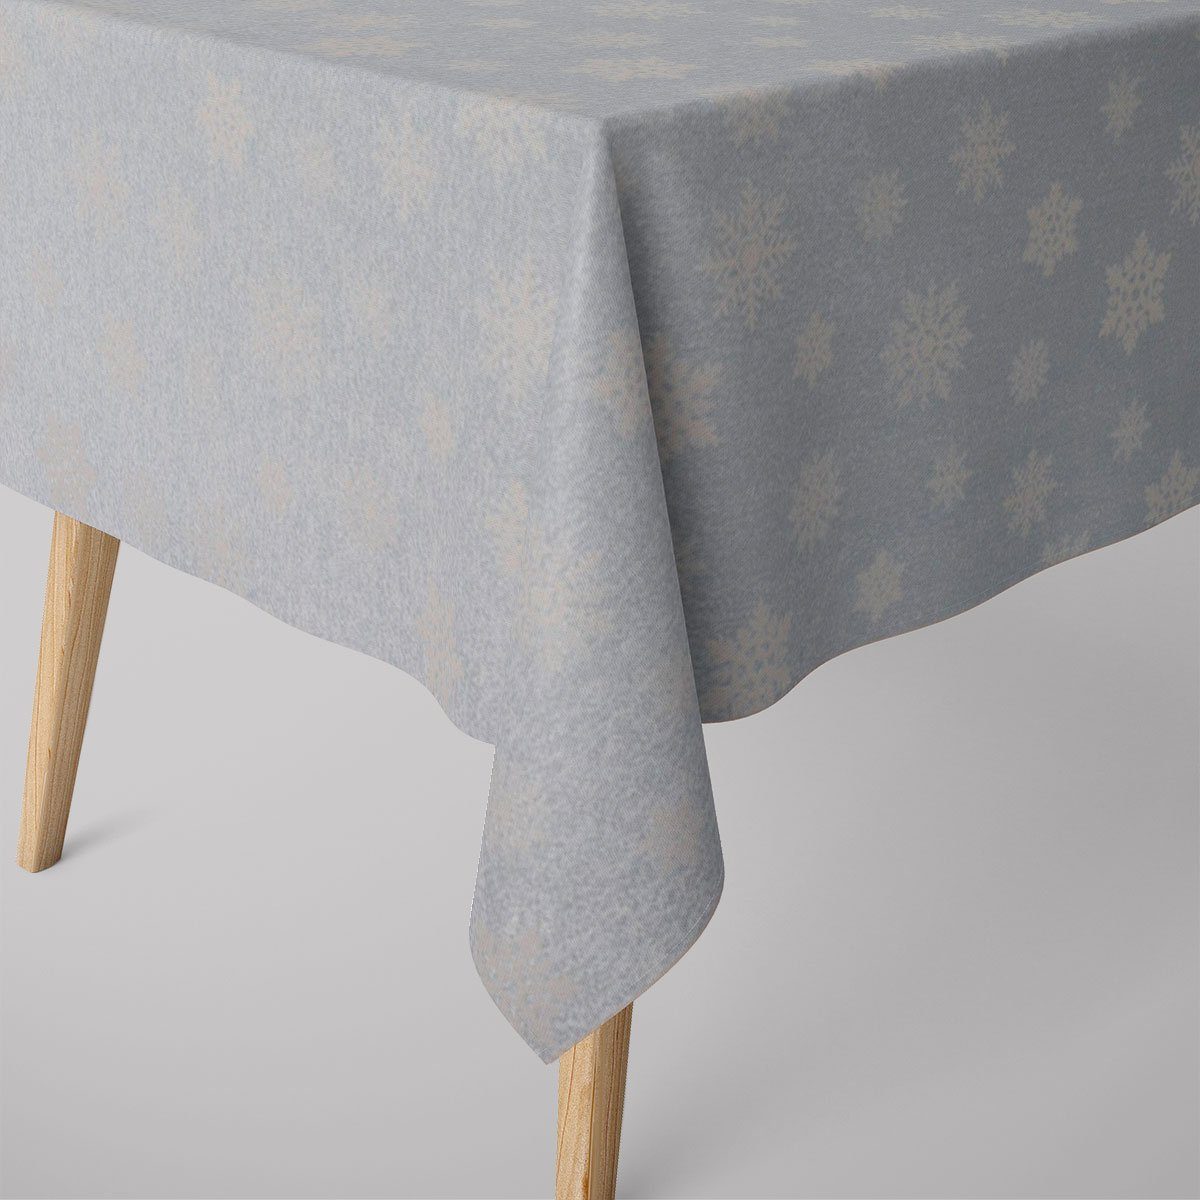 SCHÖNER LEBEN. Tischdecke SCHÖNER LEBEN. Tischdecke Eiskristalle hellblau silber beige, handmade | Tischdecken